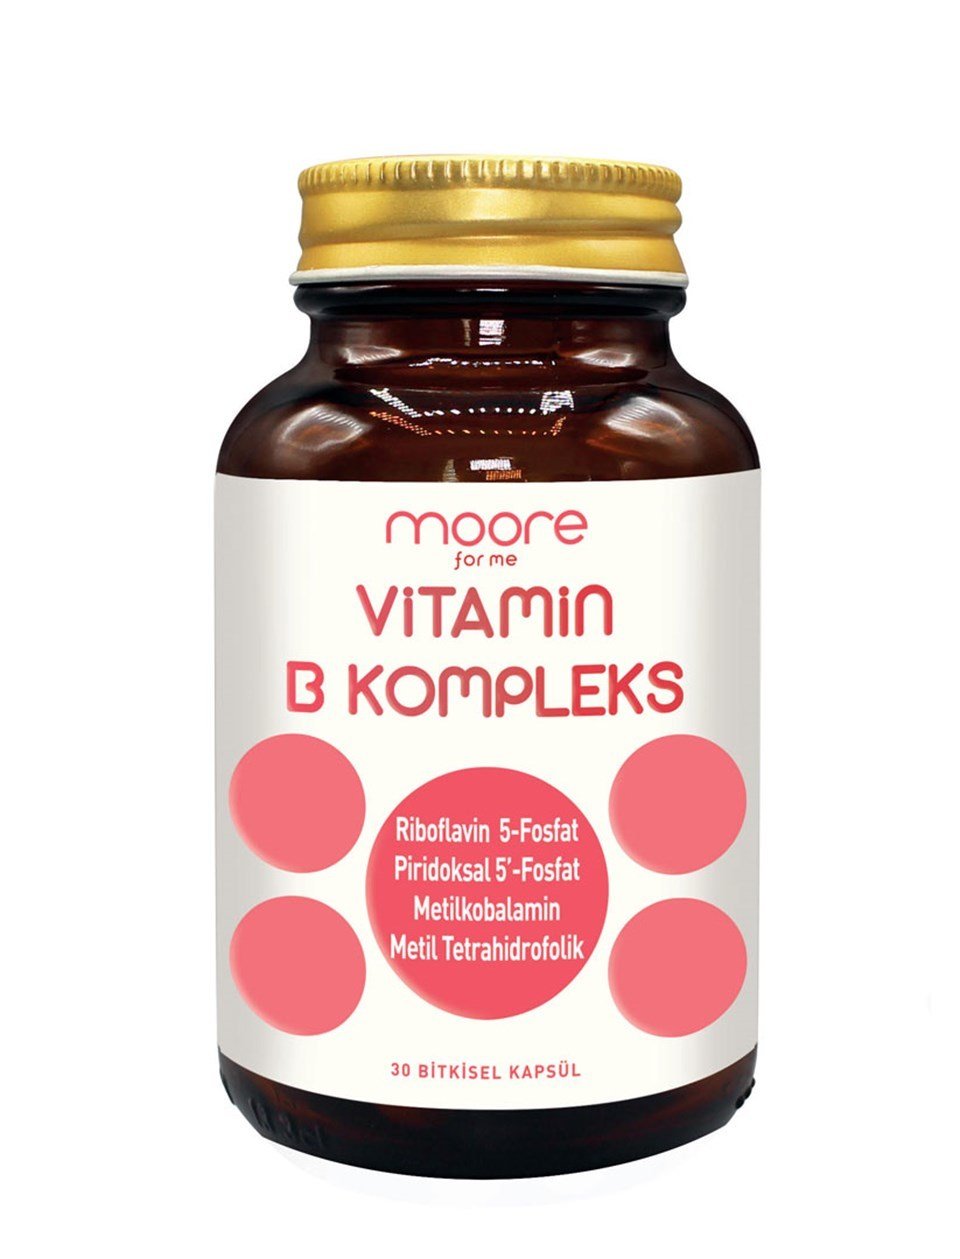 Moore Vitamin B Komplex 30 Bitkisel Kapsül